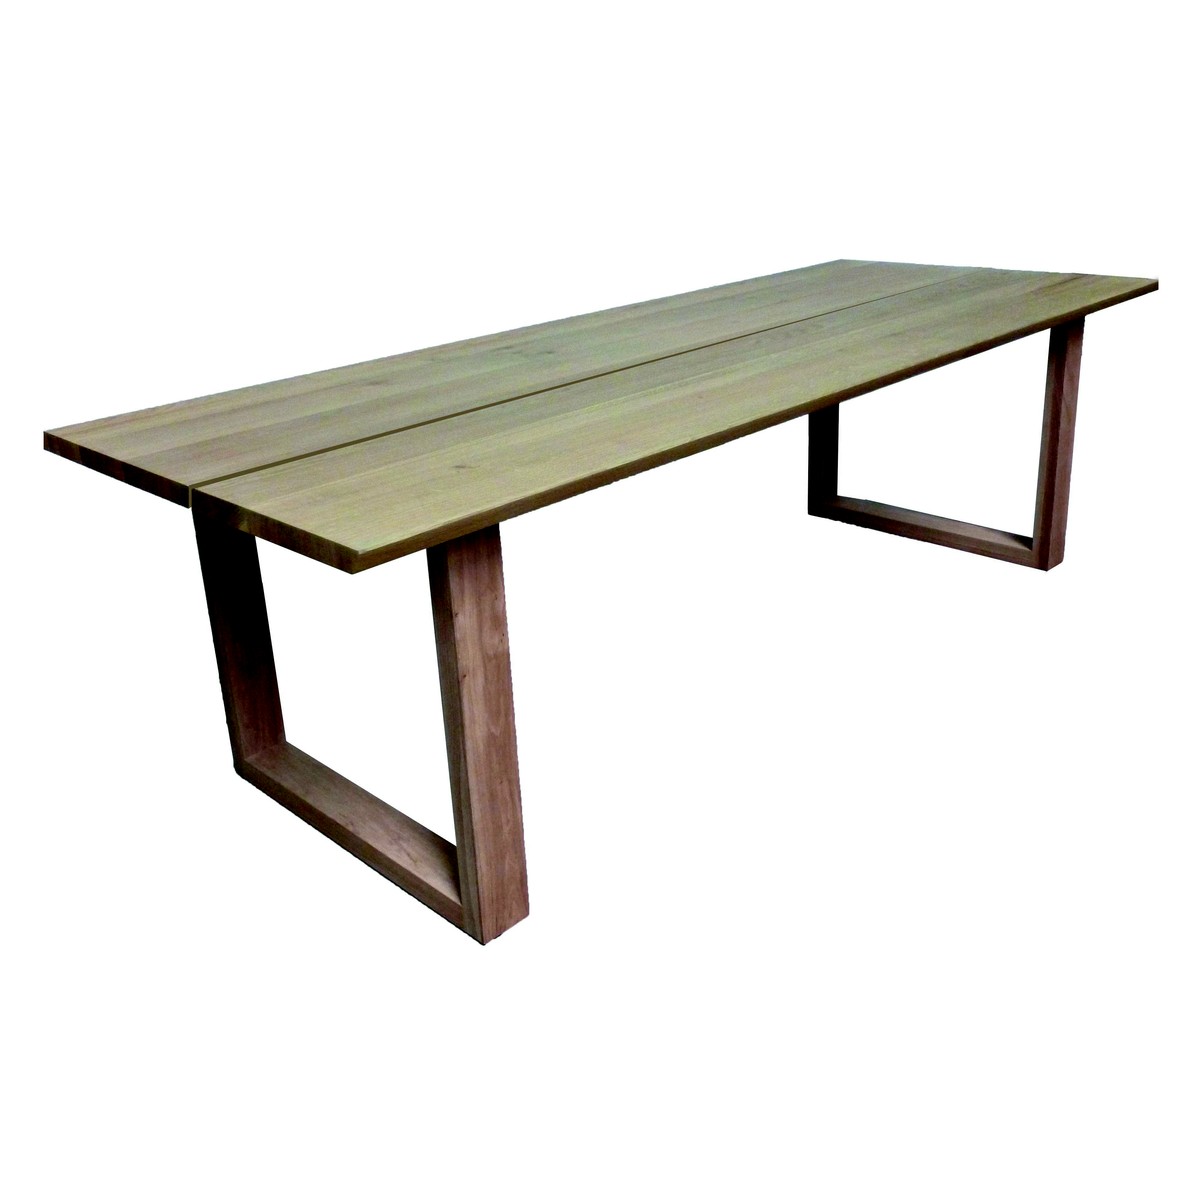   Table haute Zepp Droit ouvert rectangulaire  160x100x90cm